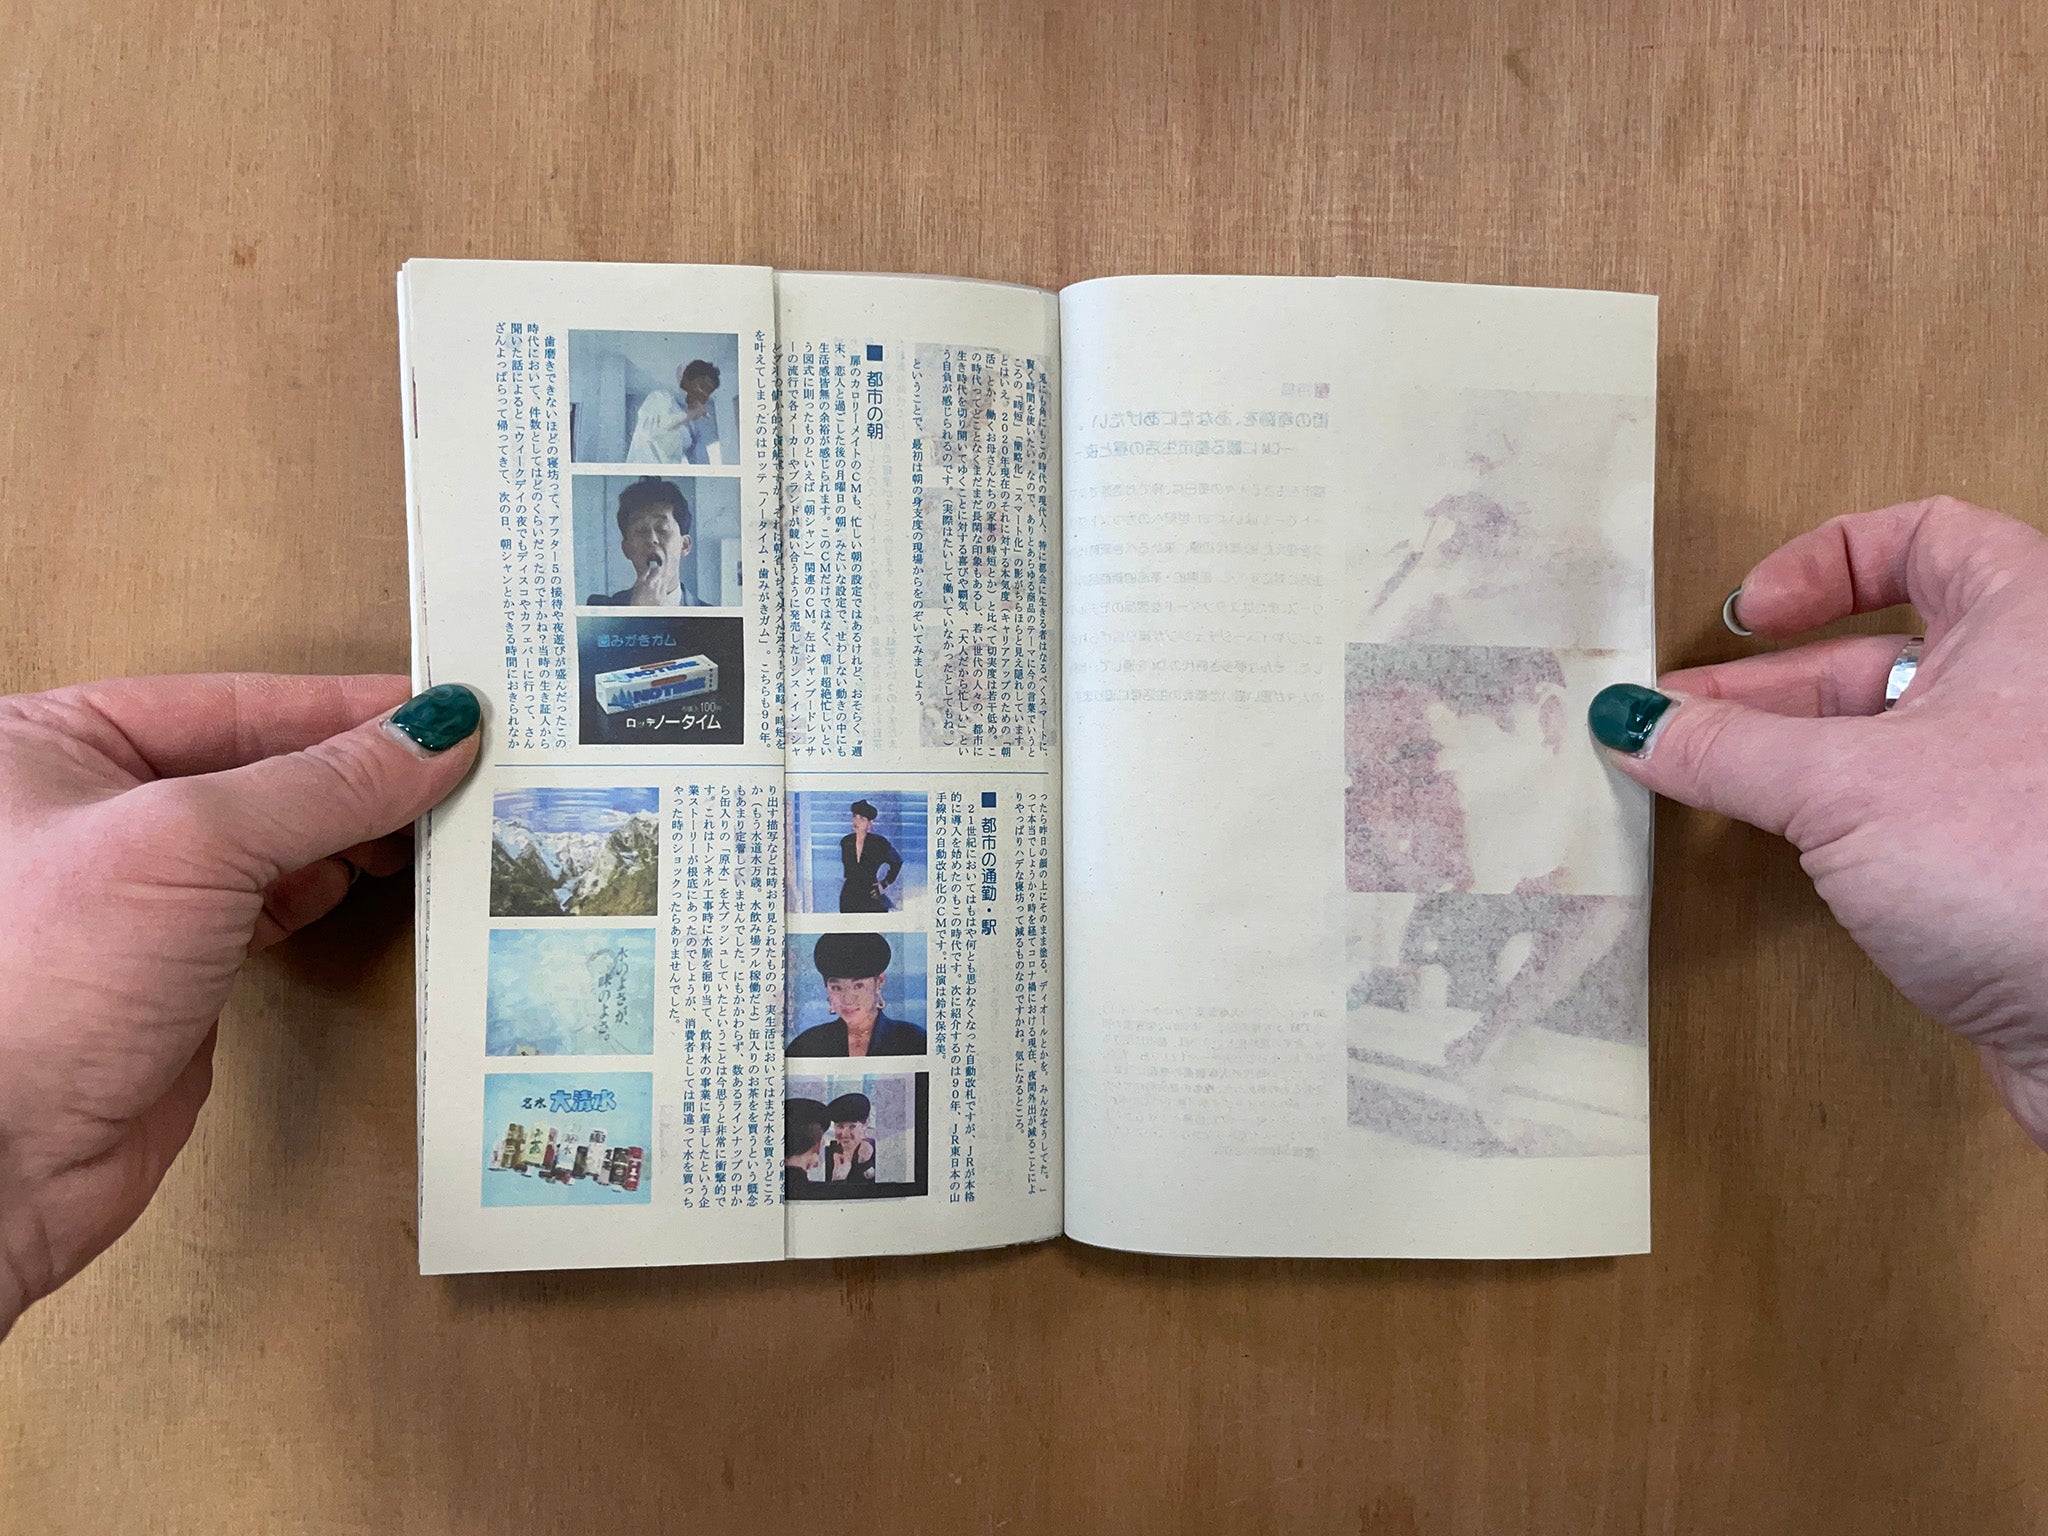 SHOUJYO HIROKAN: EPISODE 7 SPECIAL FEATURE by Nahoko Shindo